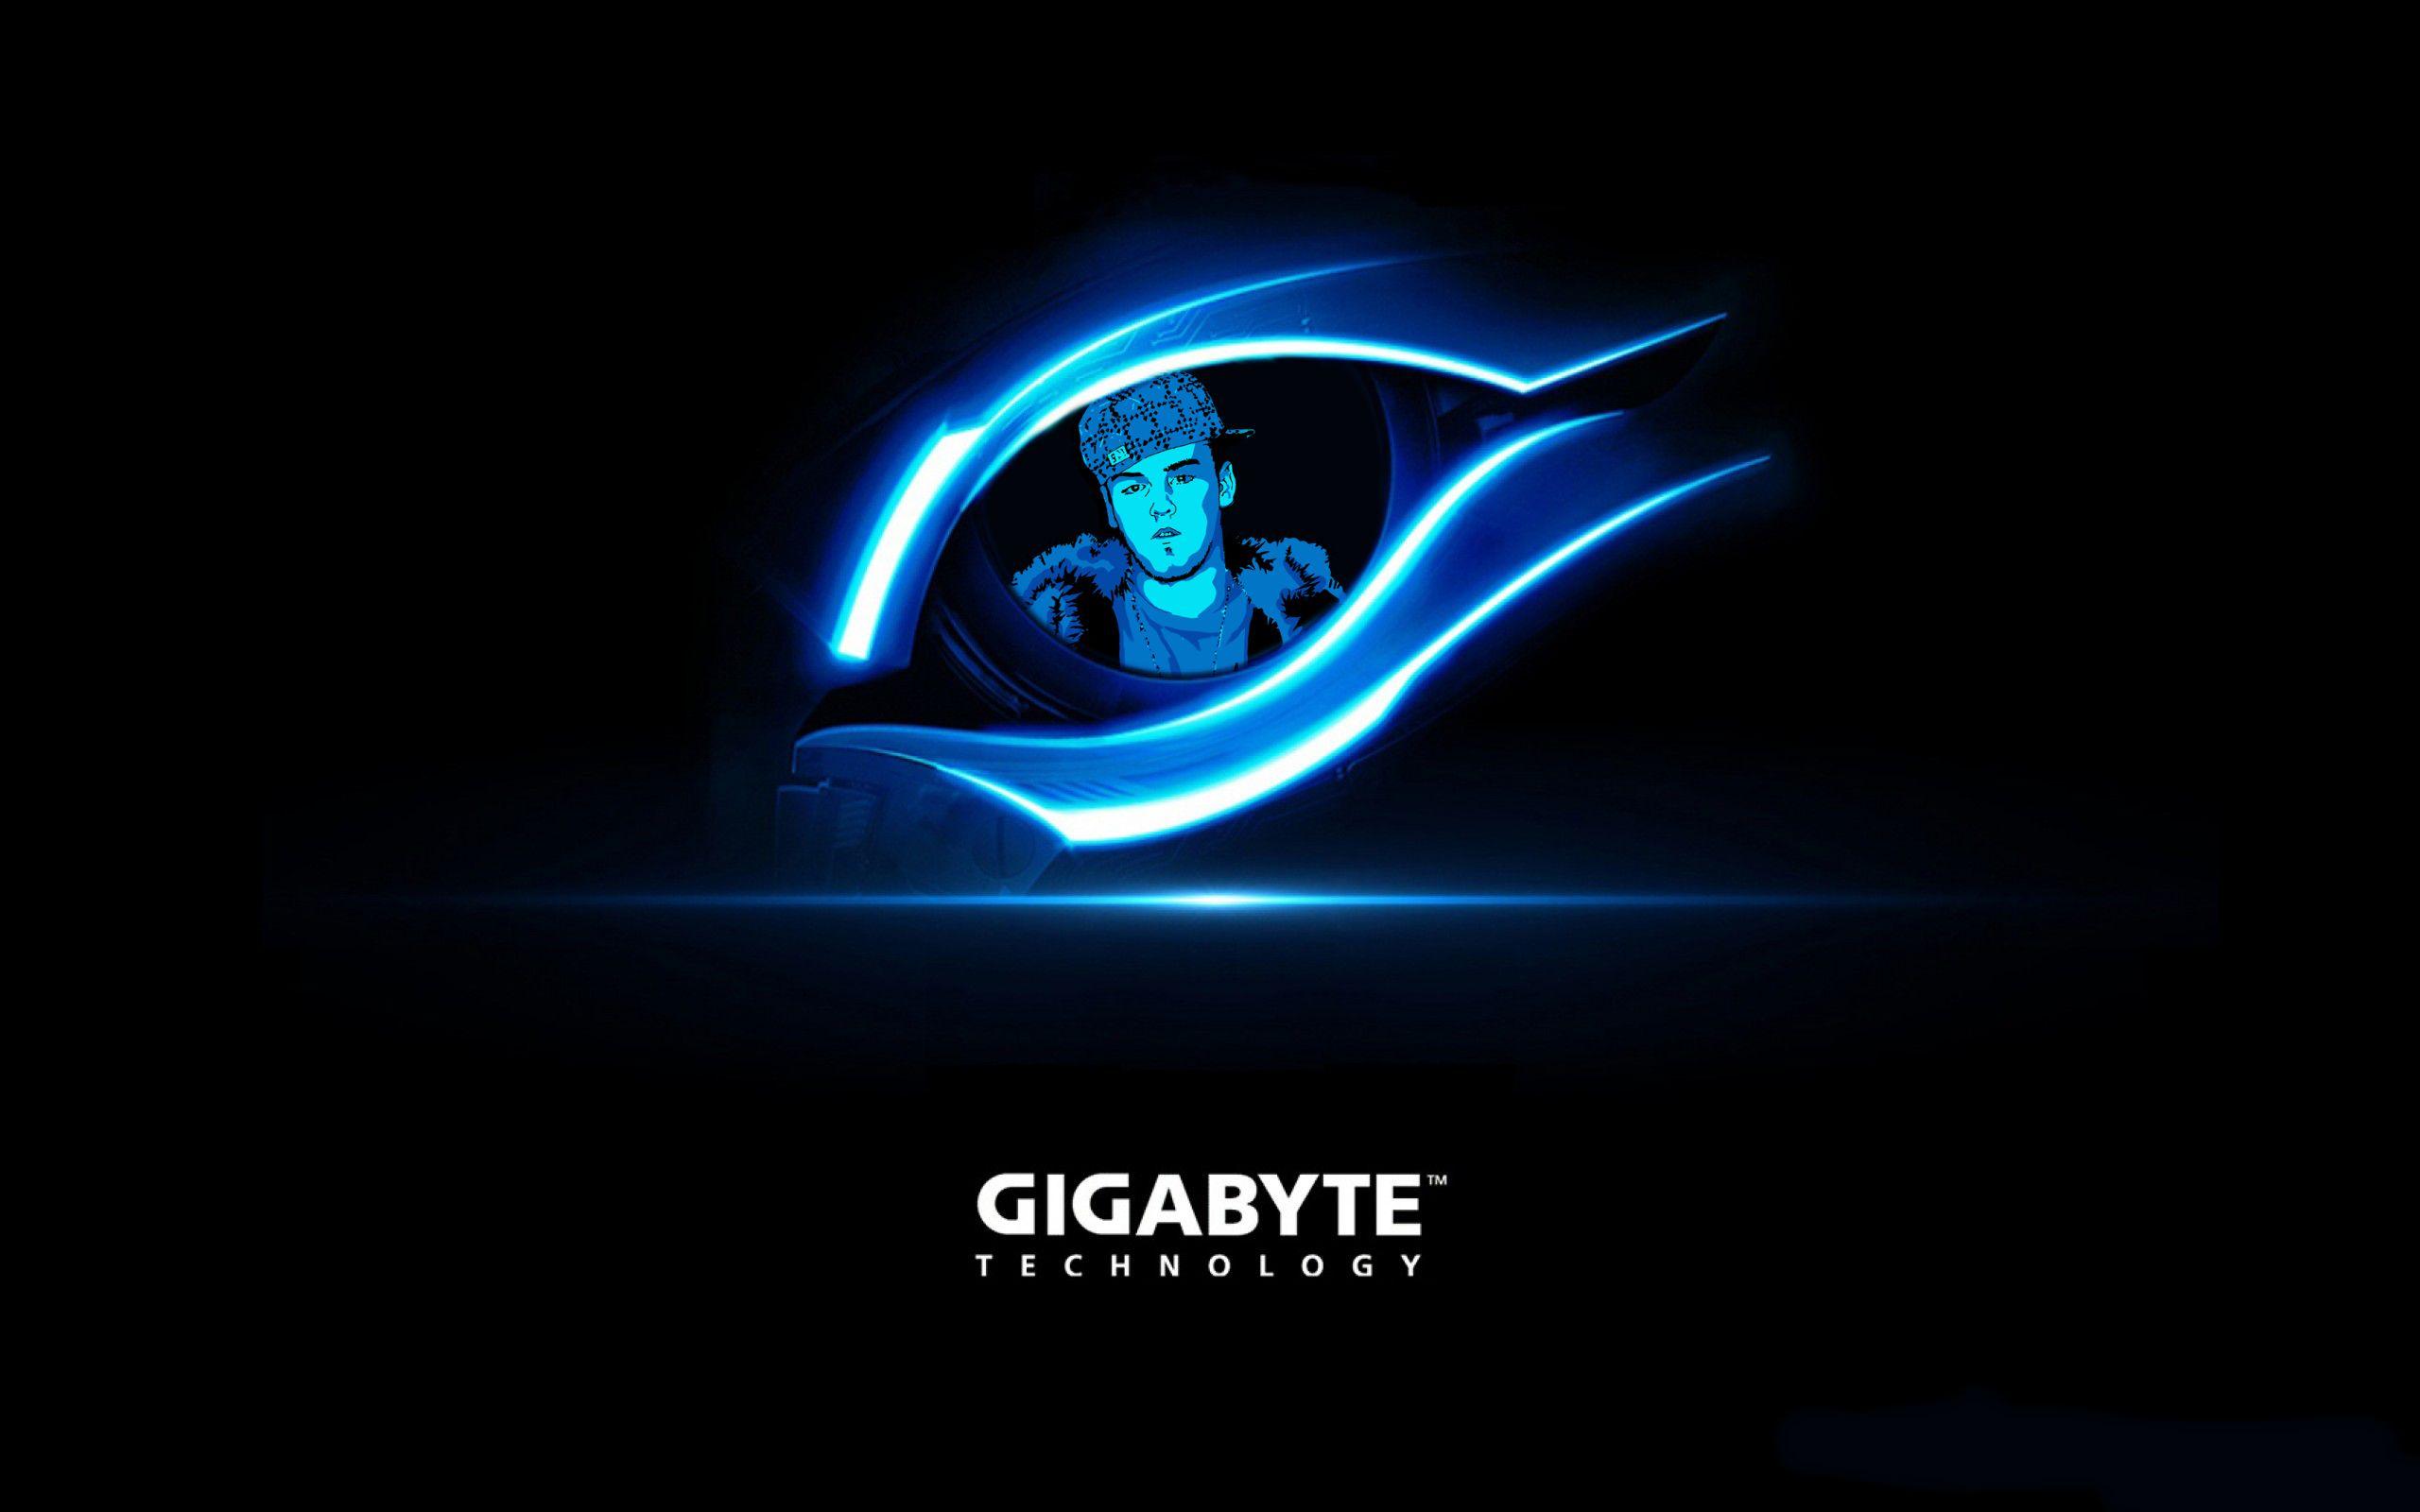 New Gigabyte Logo - I Made a Wallpaper With Gigabyte's New Logo : pcmasterrace